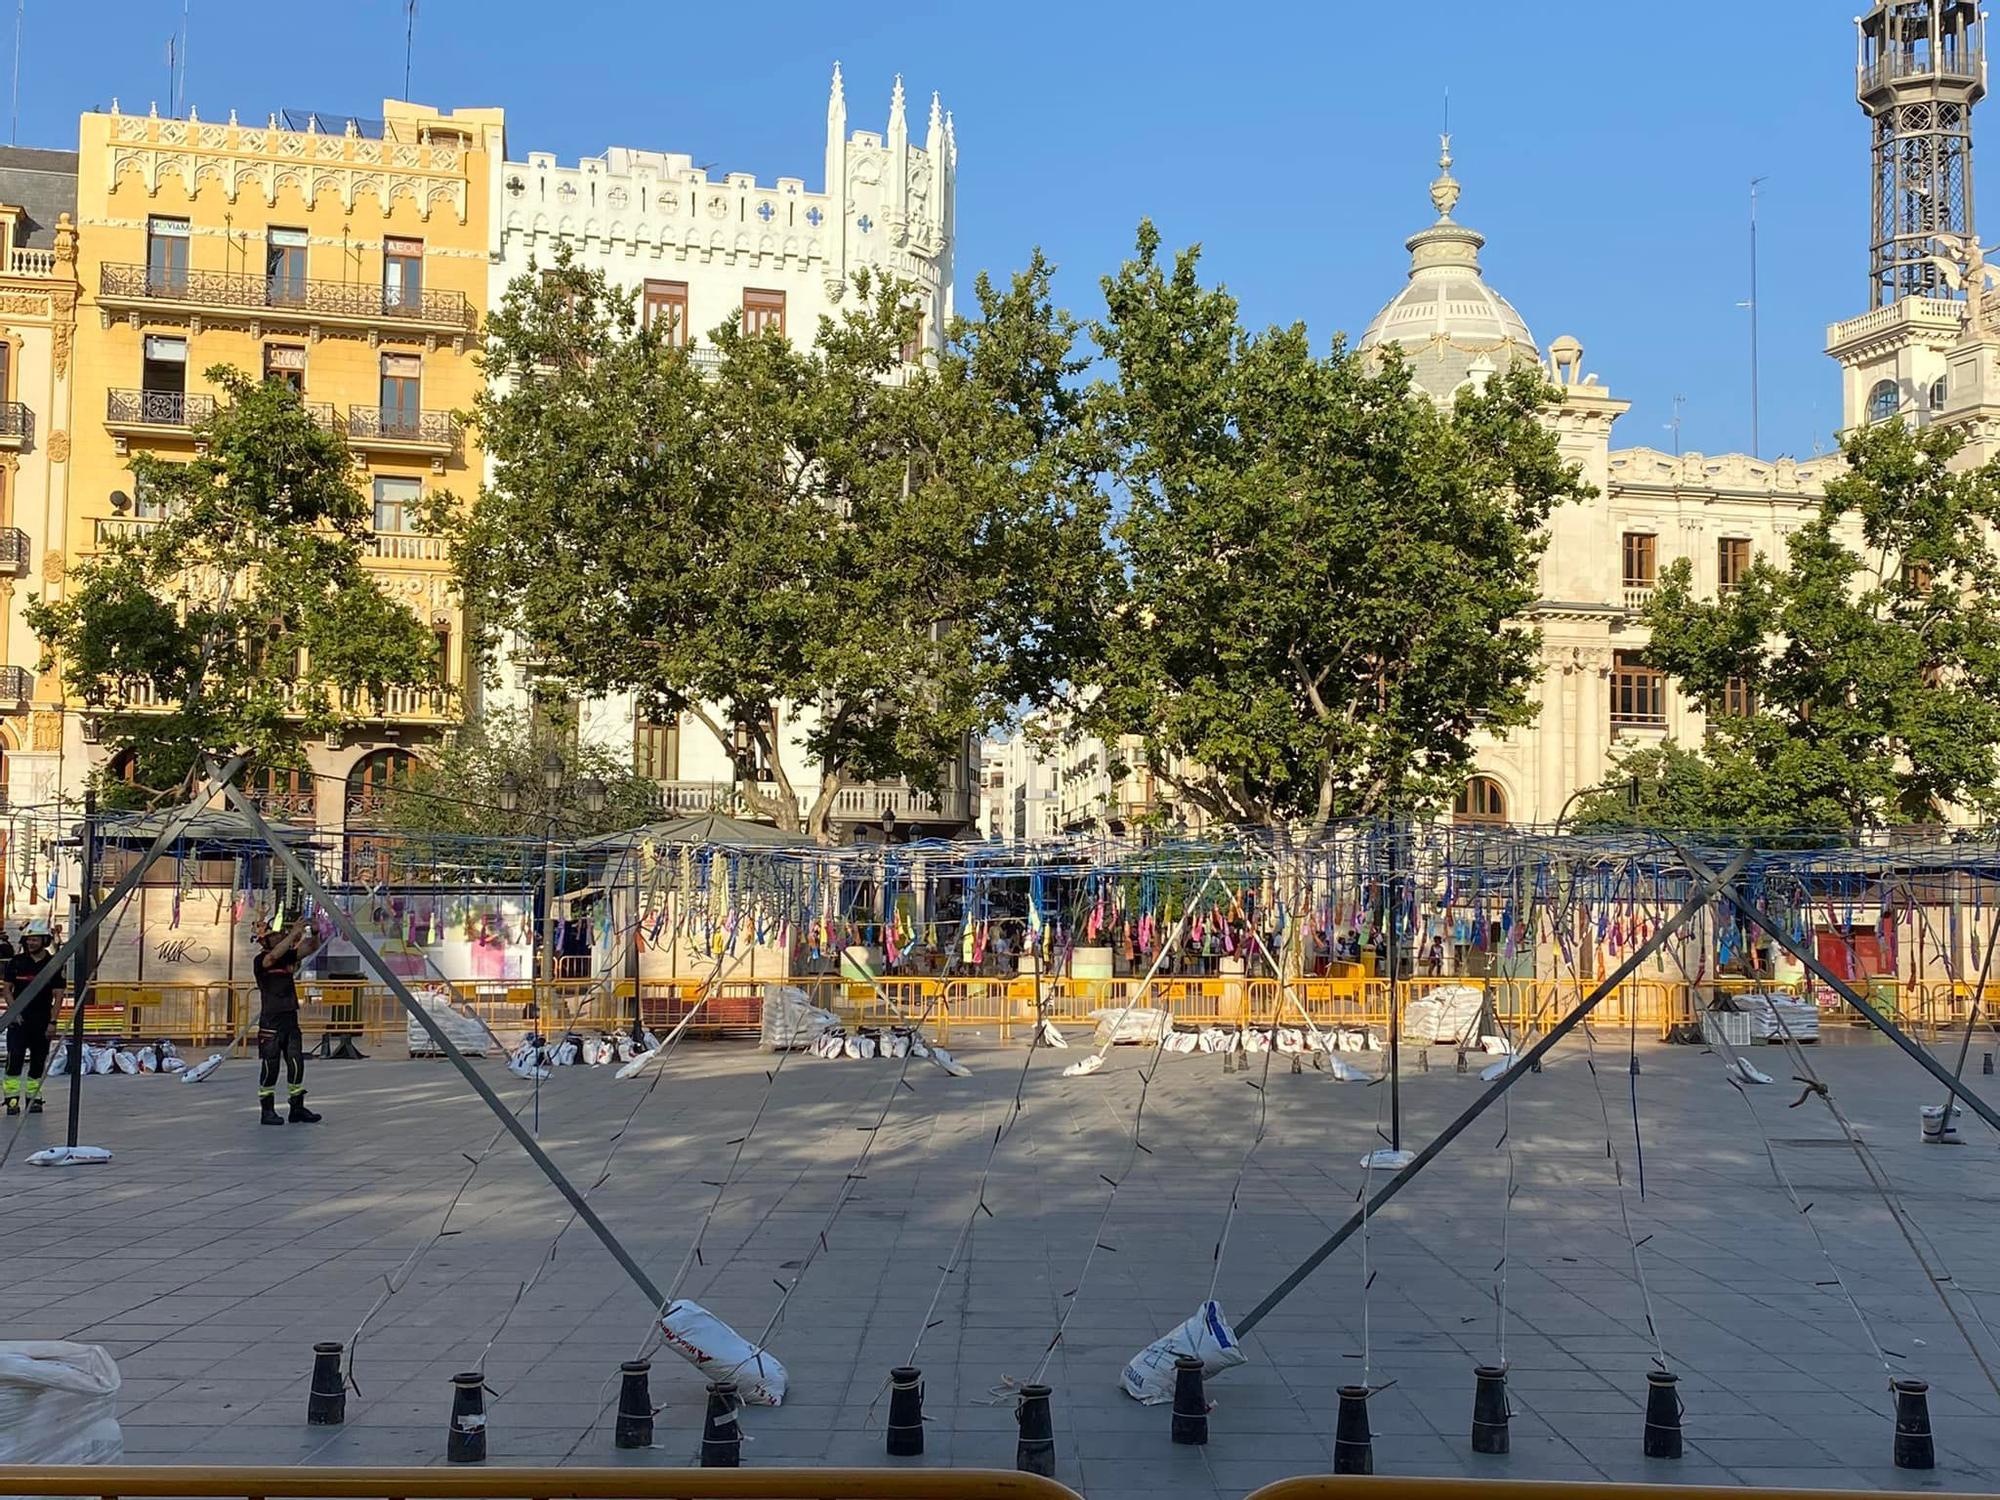 La plaza acoge una "mascletà" con 60 años de antigüedad